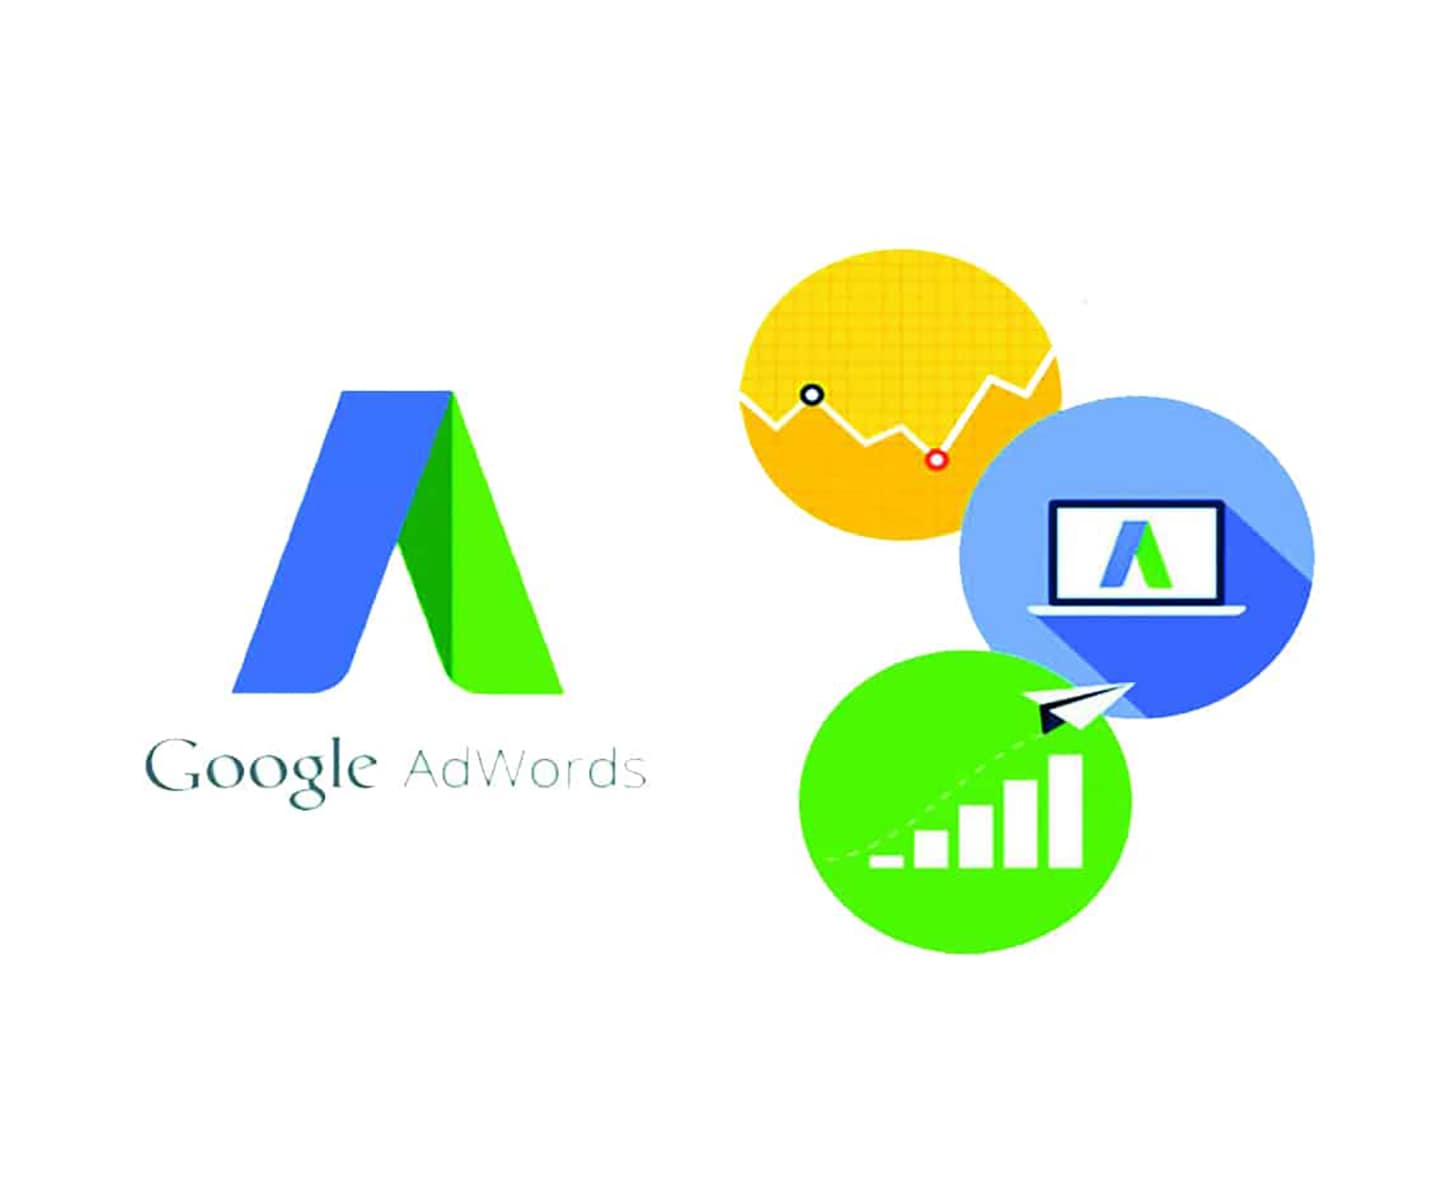 Tìm hiểu về Google Adwords từ Cơ bản đến Nâng cao